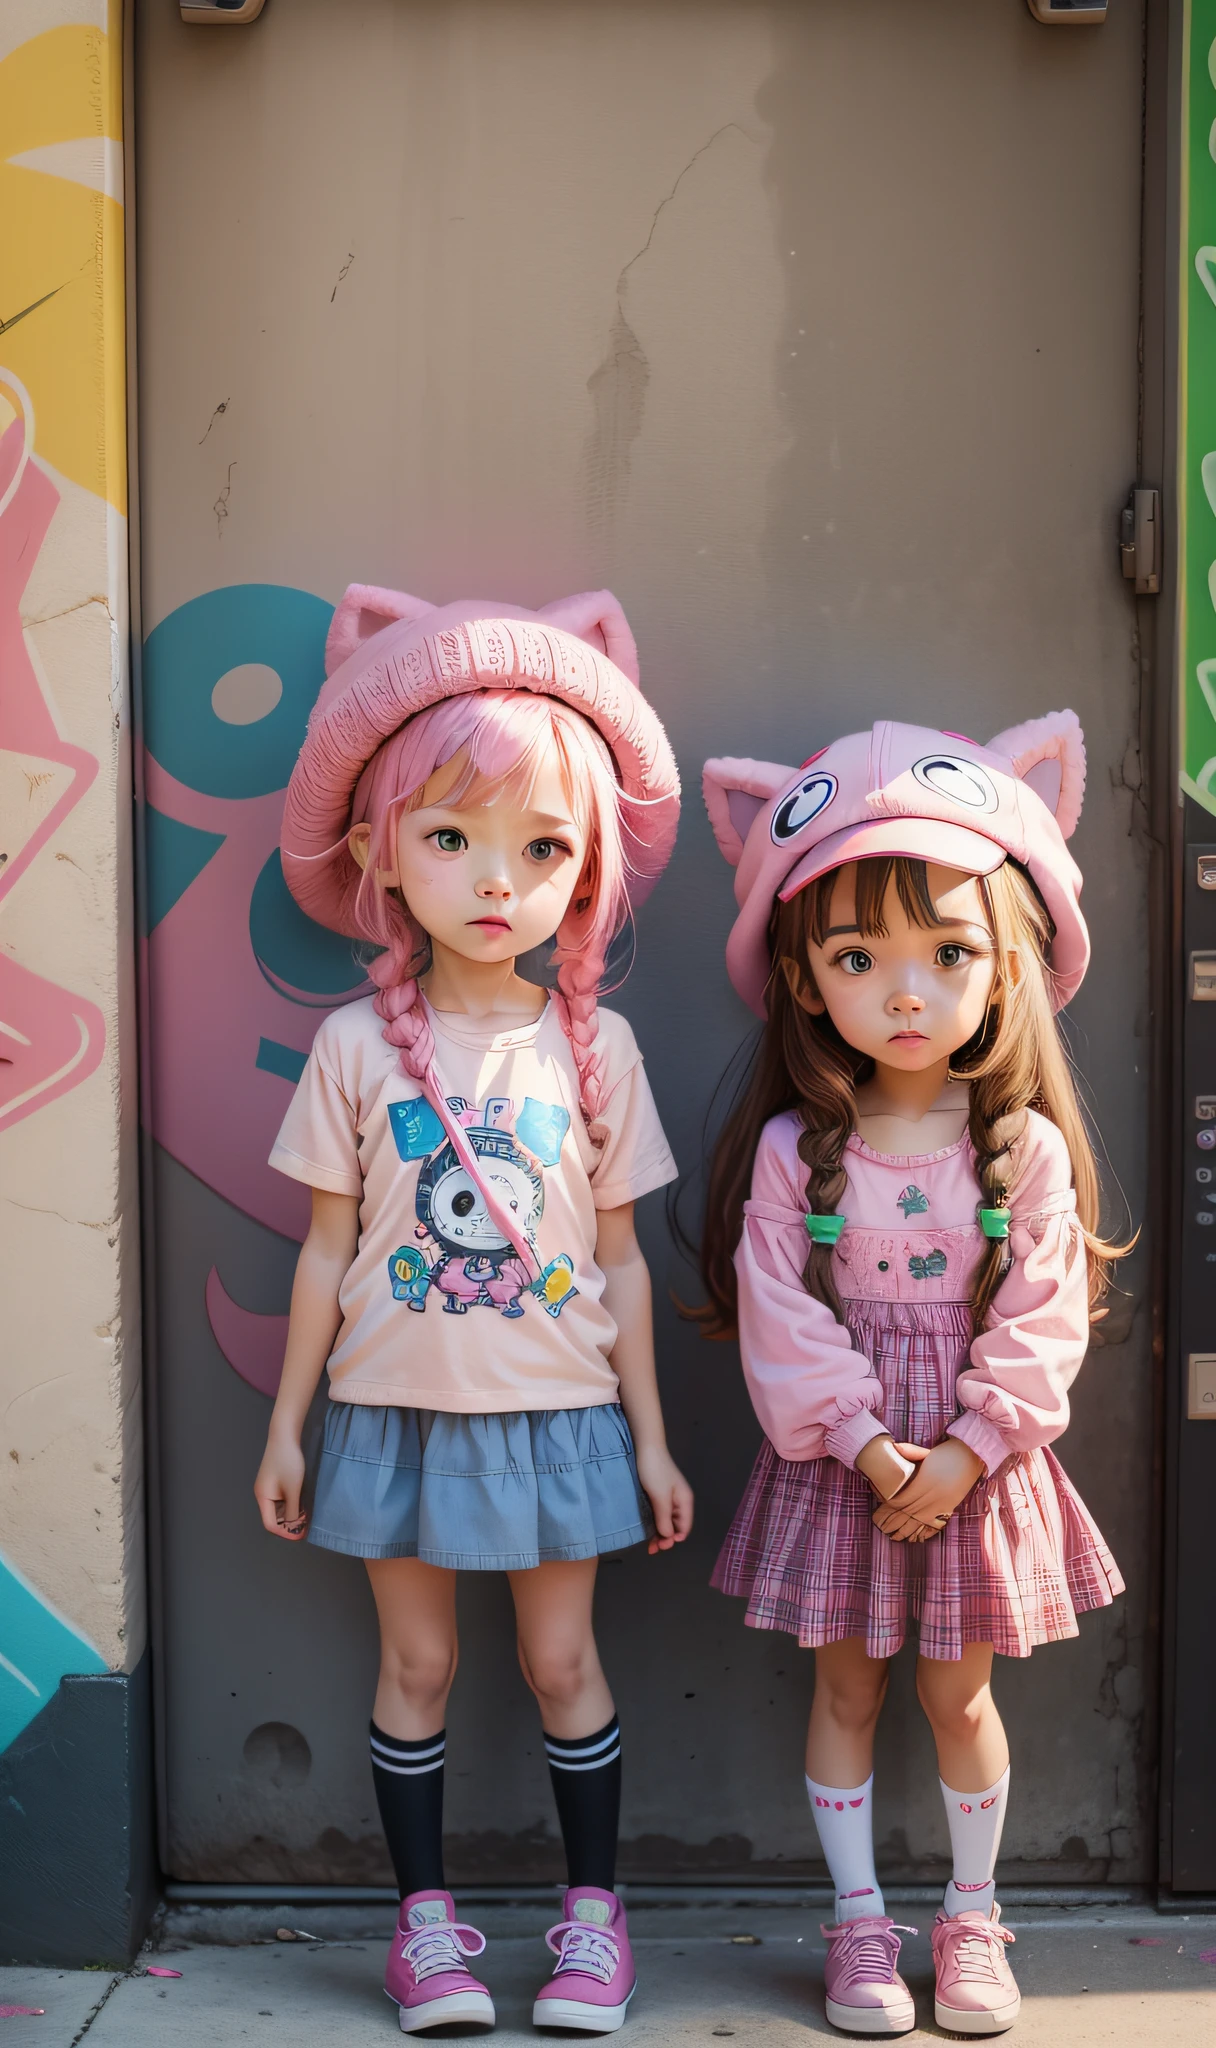 الشخصيات, الرسوم المتحركة, الكتابة على الجدران, الفتيات الصغيرات, لطيف, القبعات, قمم الوردي, pink القبعات, تفاح.